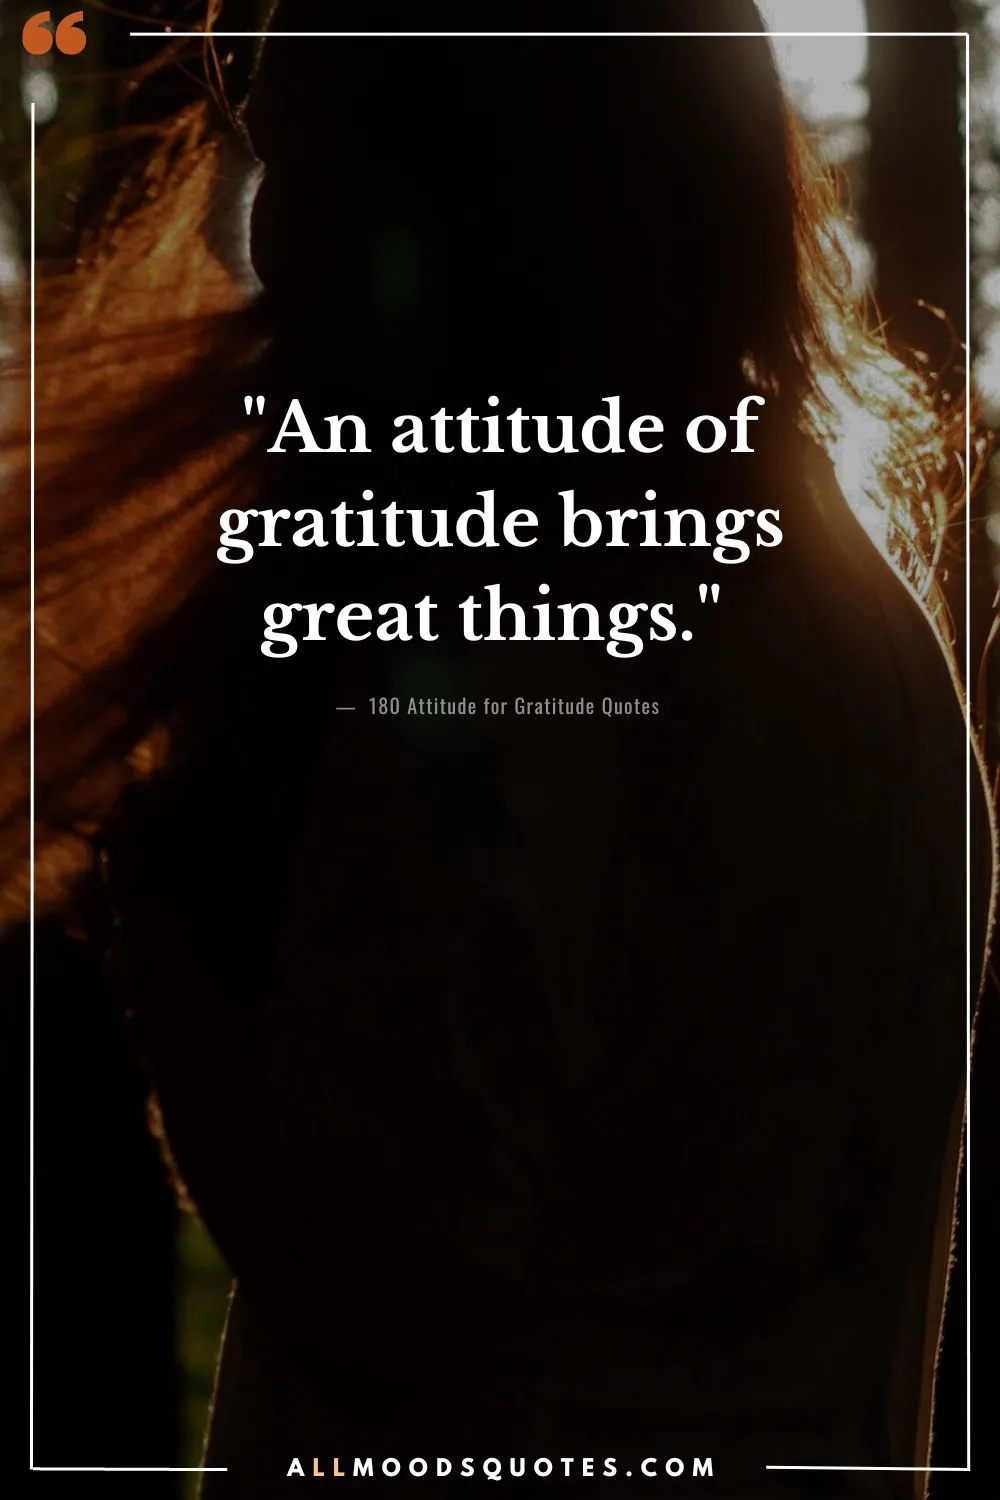 "An attitude of gratitude brings great things." - Yogi Bhajan